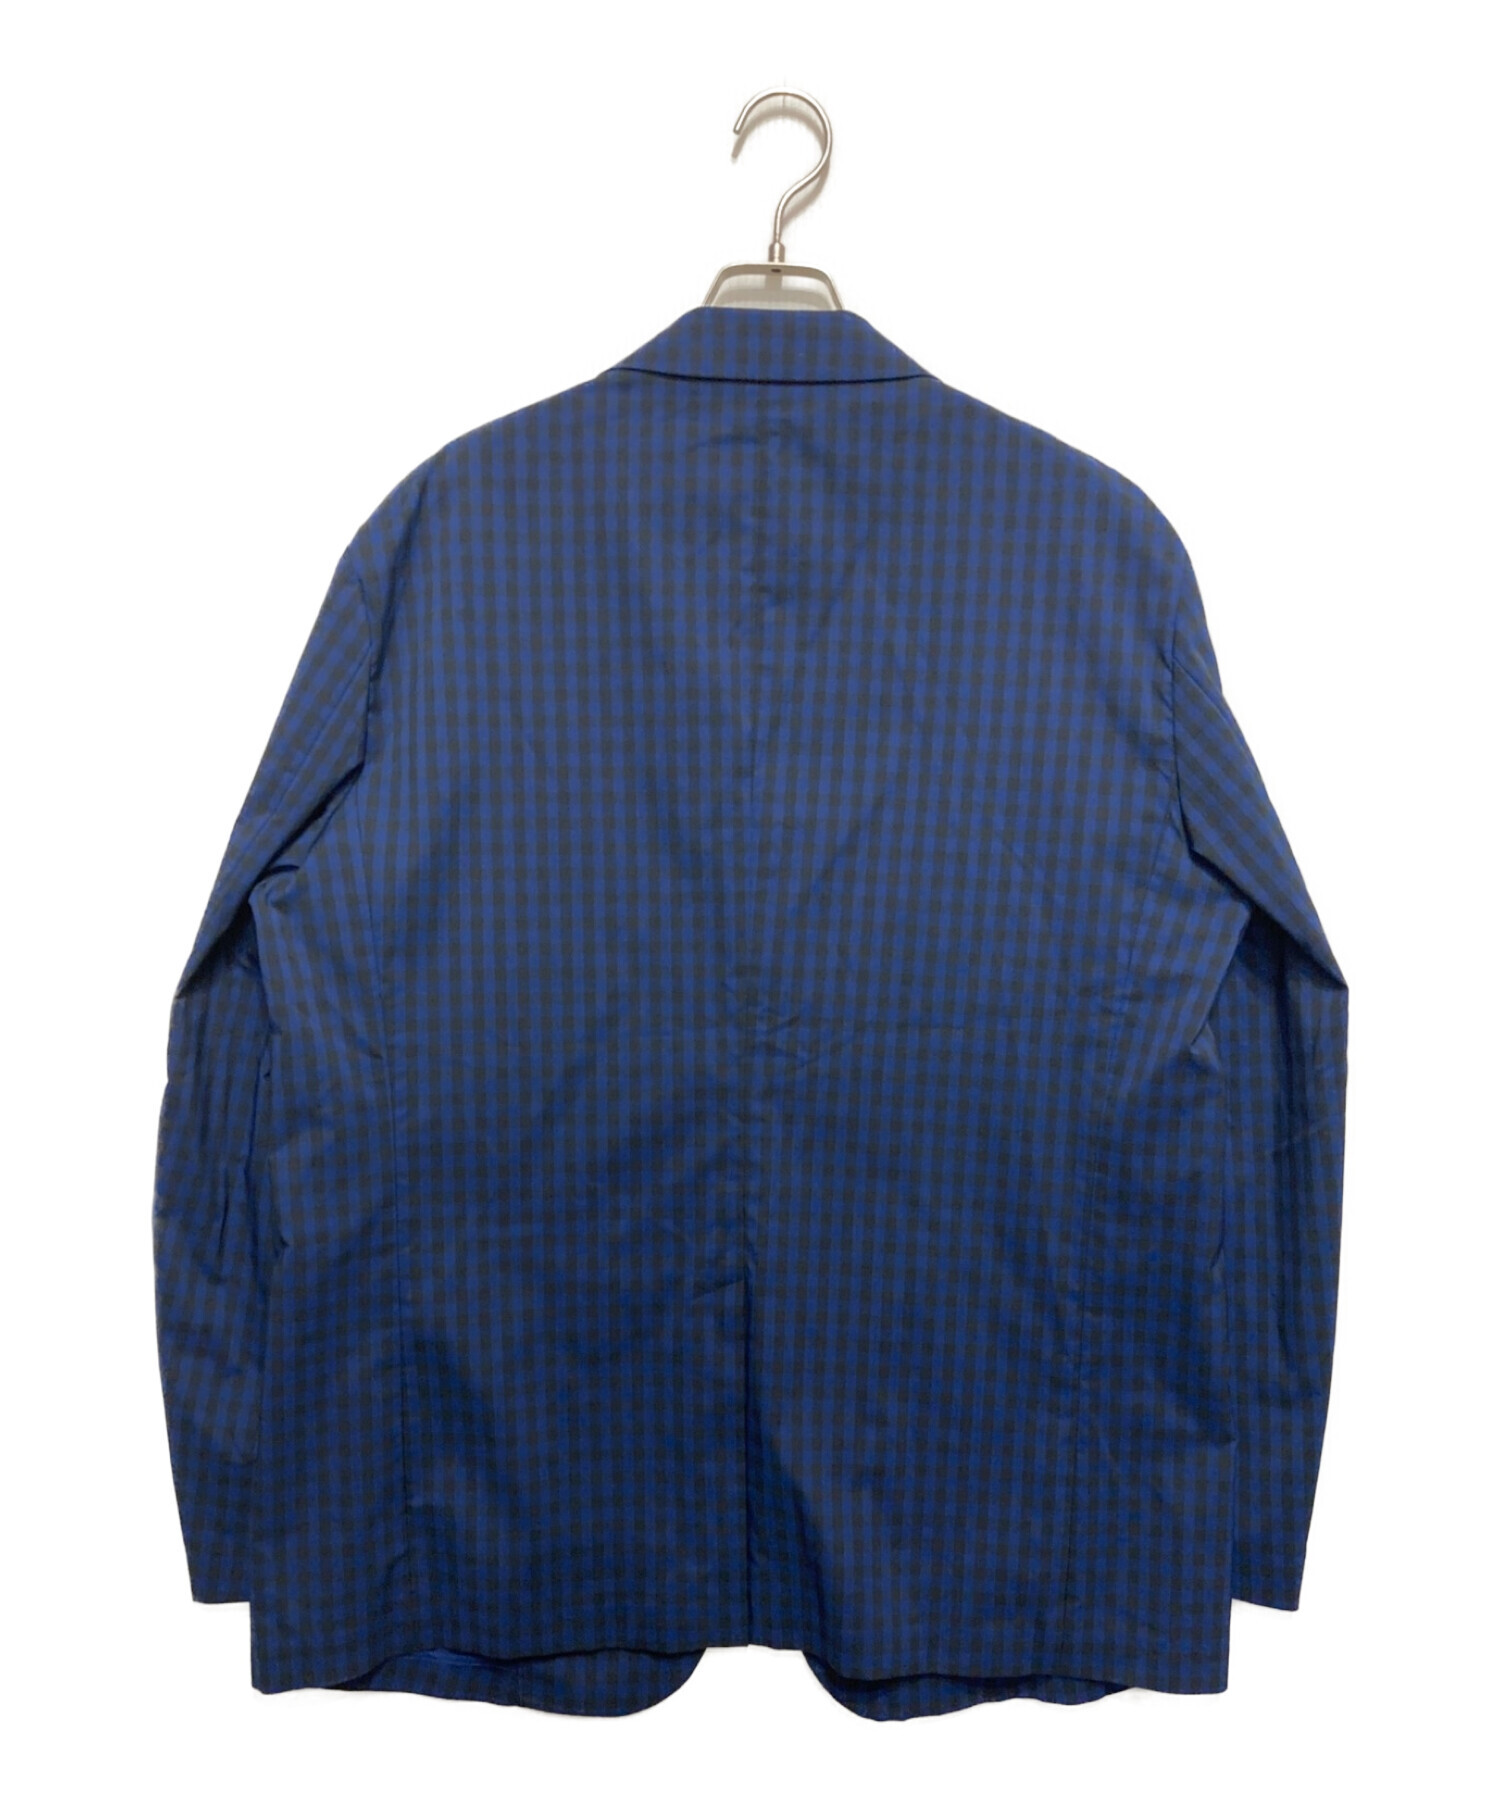 UNIQLO (ユニクロ) MARNI (マルニ) テーラードジャケット ネイビー サイズ:XL